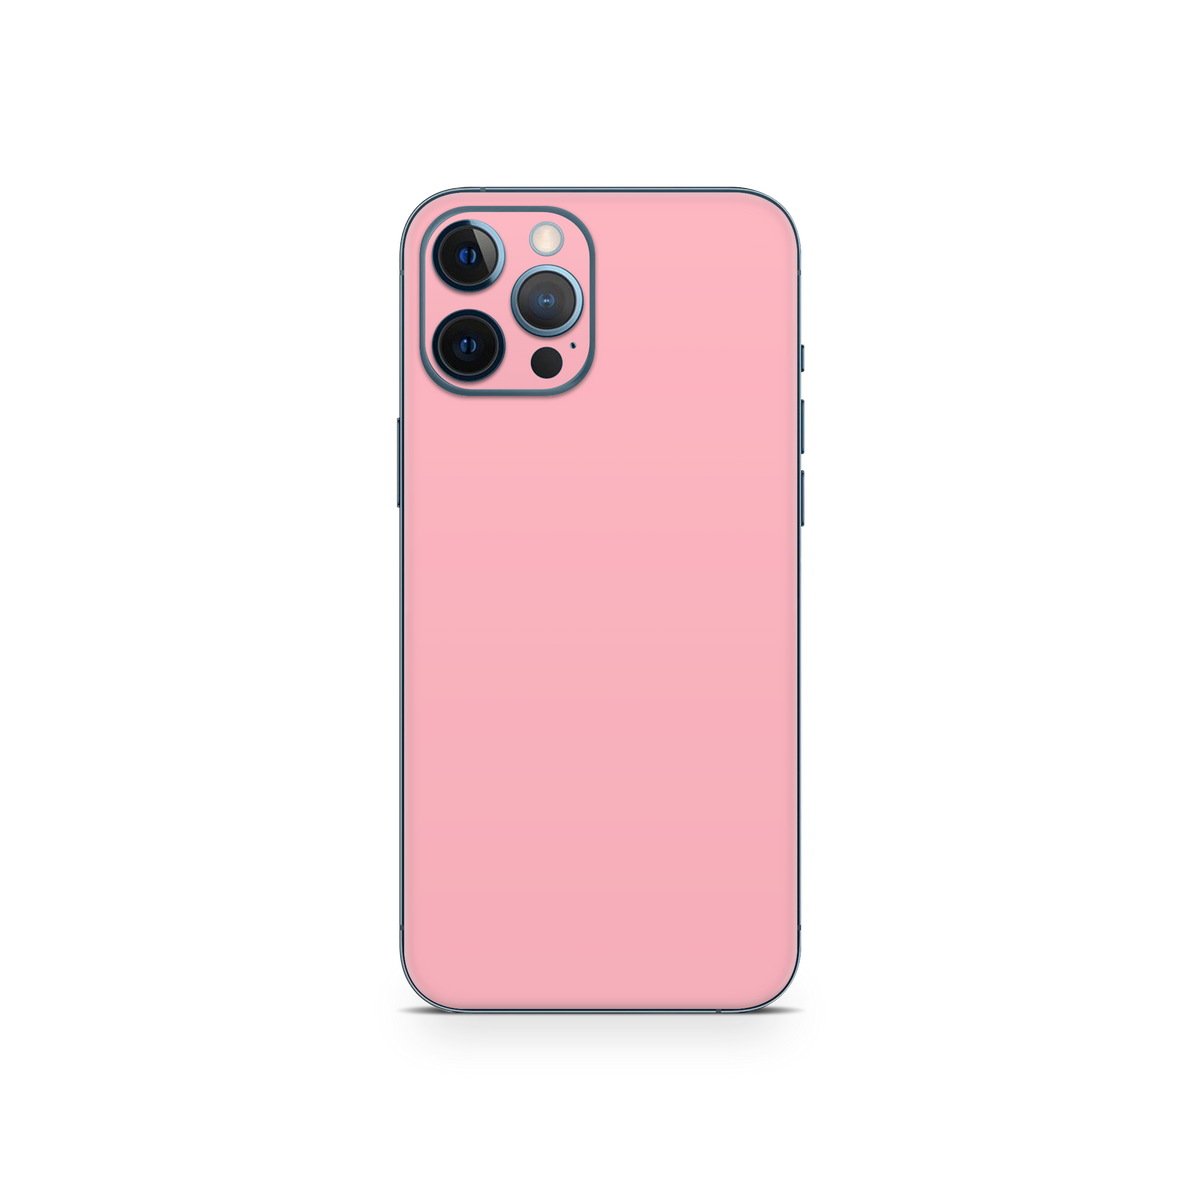 Apple iPhone 12 Pro Pastel Pink Skin